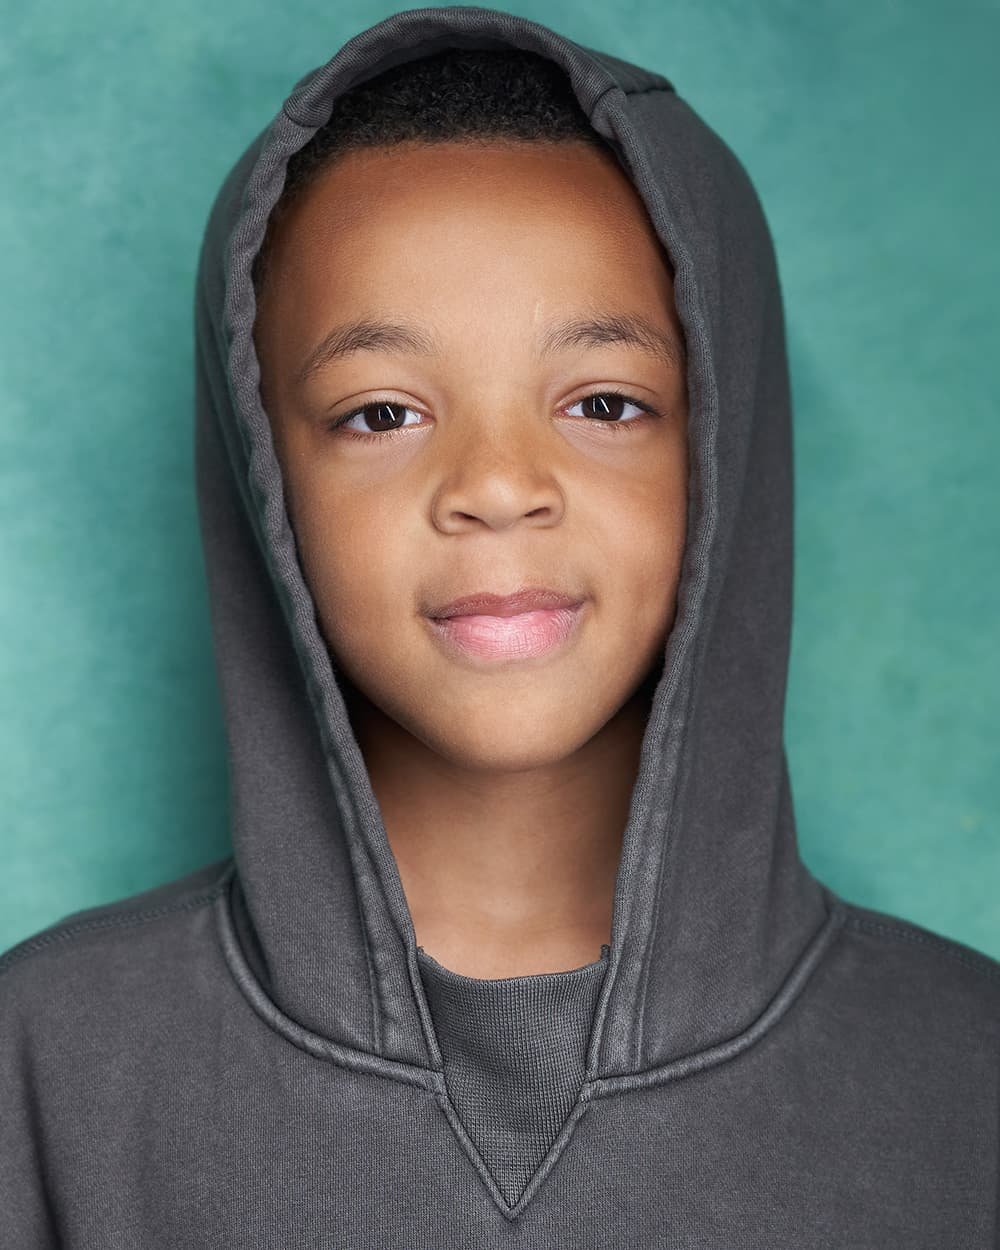 Child Actor Headshot green background